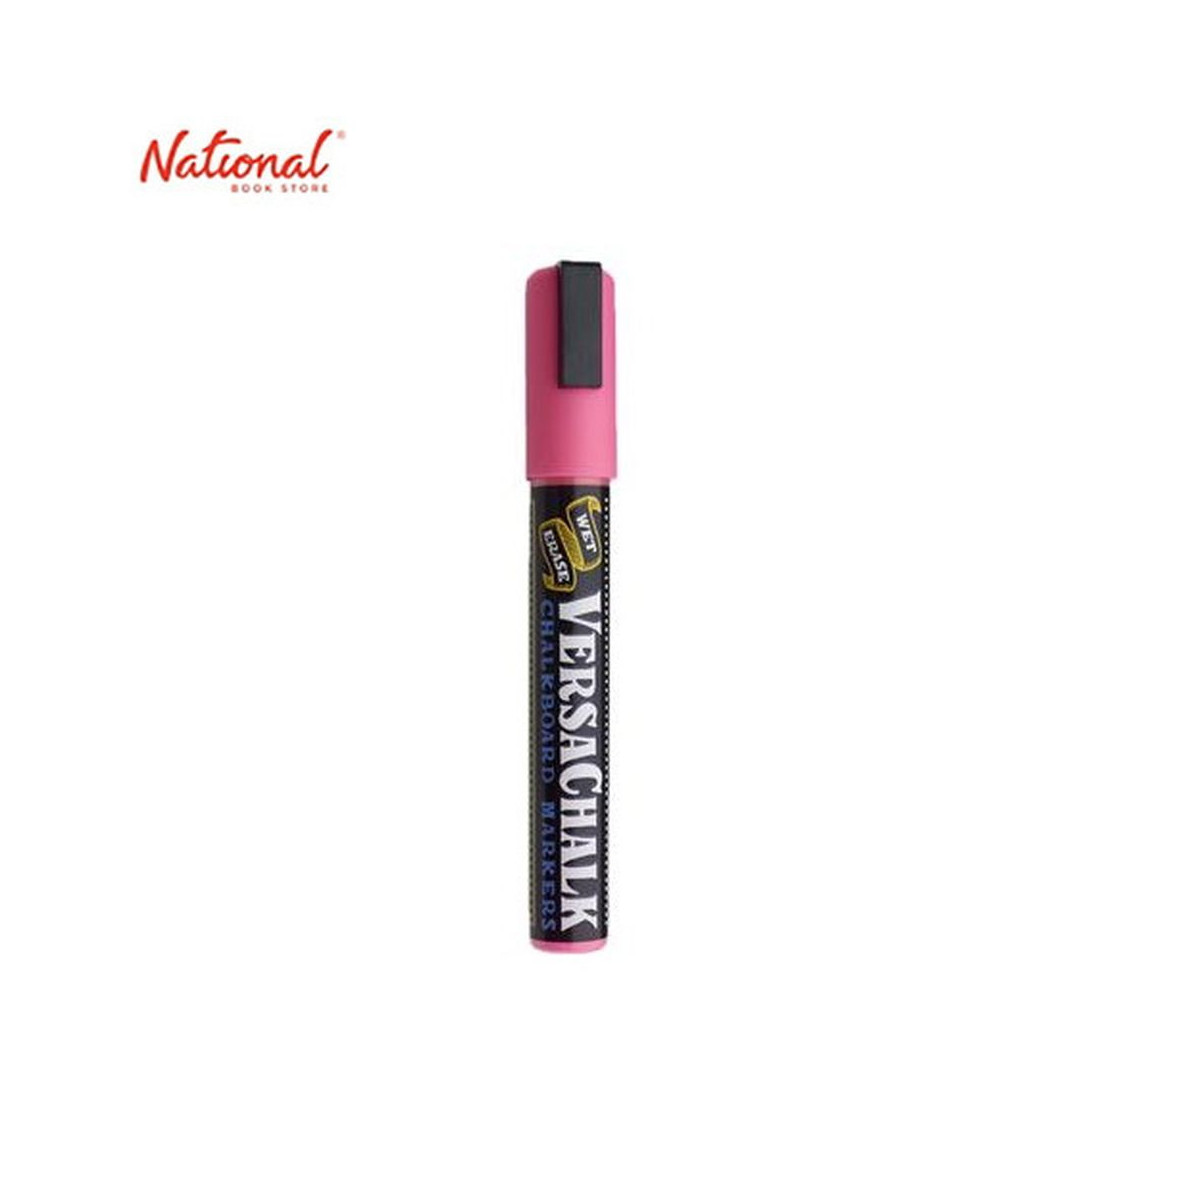 Versachalk Neon Pink Chalk Marker (Bold) Singles